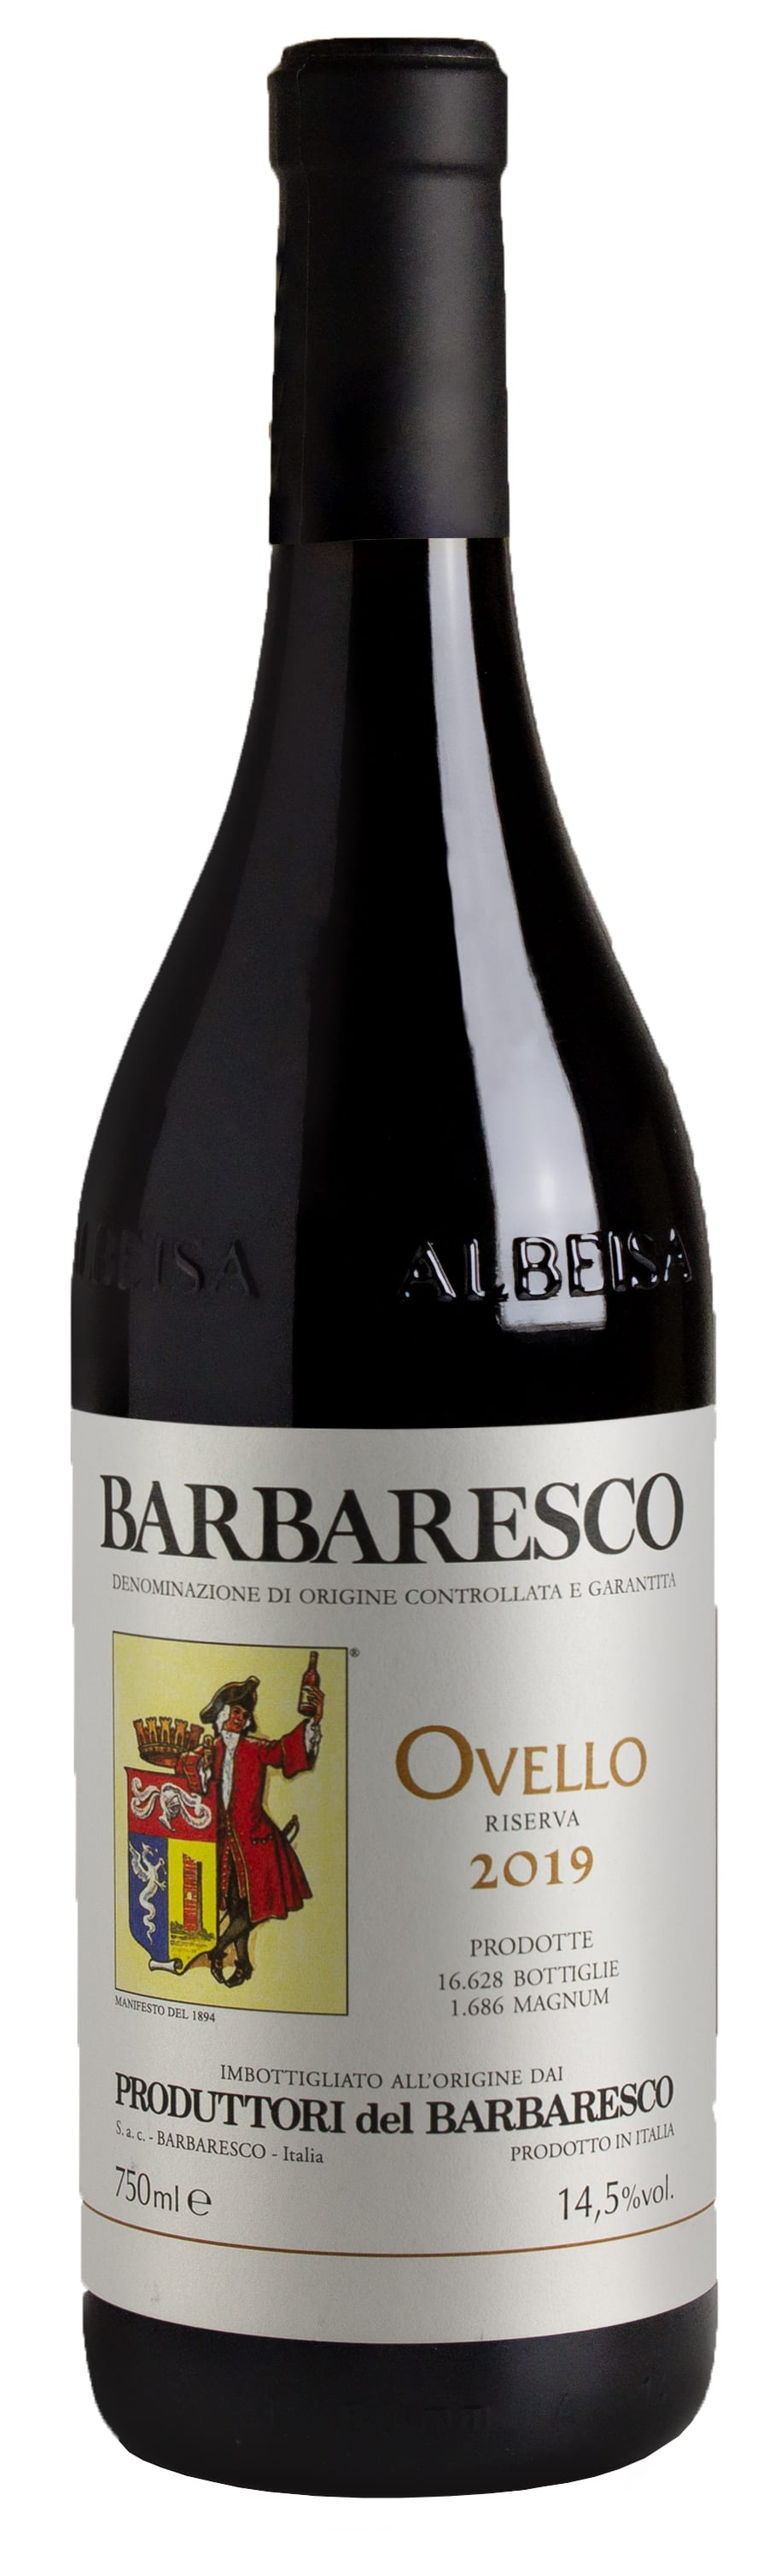 Produttori del Barbaresco - Barbaresco Ovello 2019 (1500)